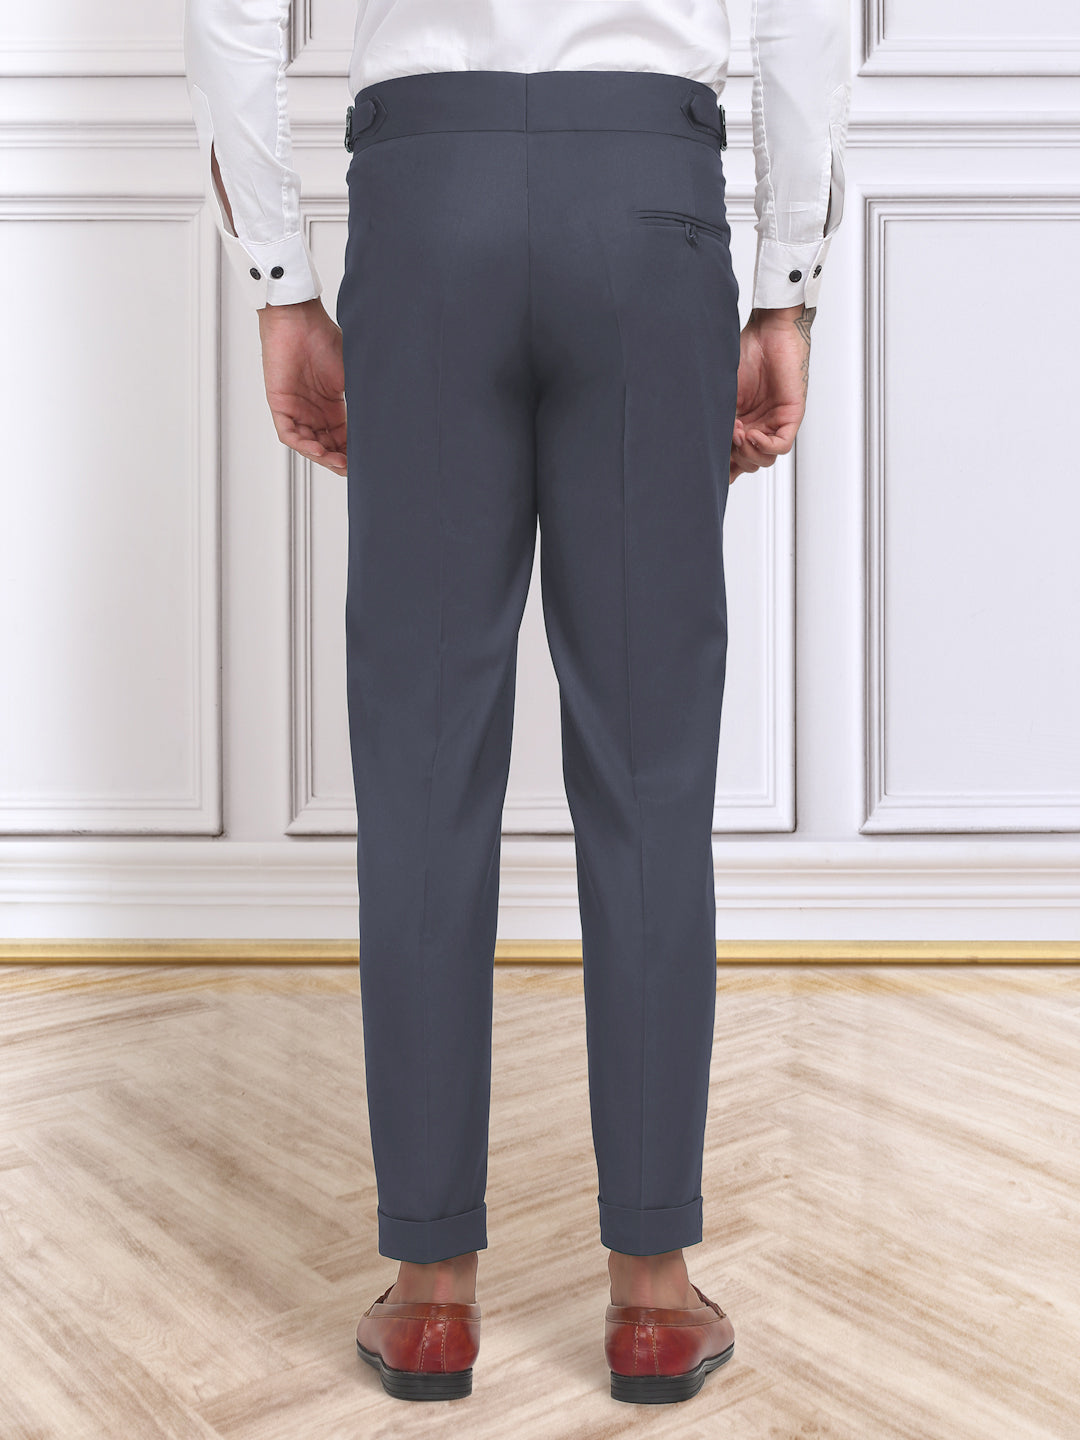 Klotthe Men's Slim Fit Formal Trouser-LightBlue